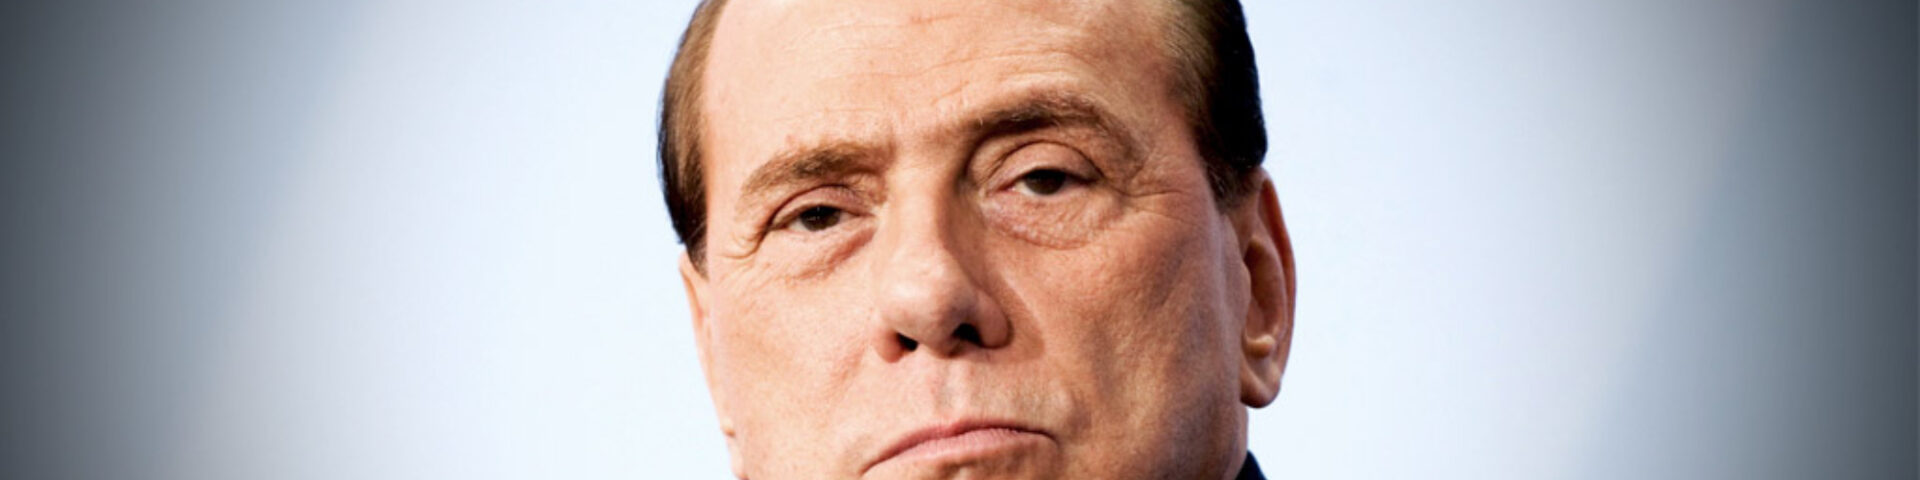 Silvio Berlusconi, quando e dove si terranno i funerali